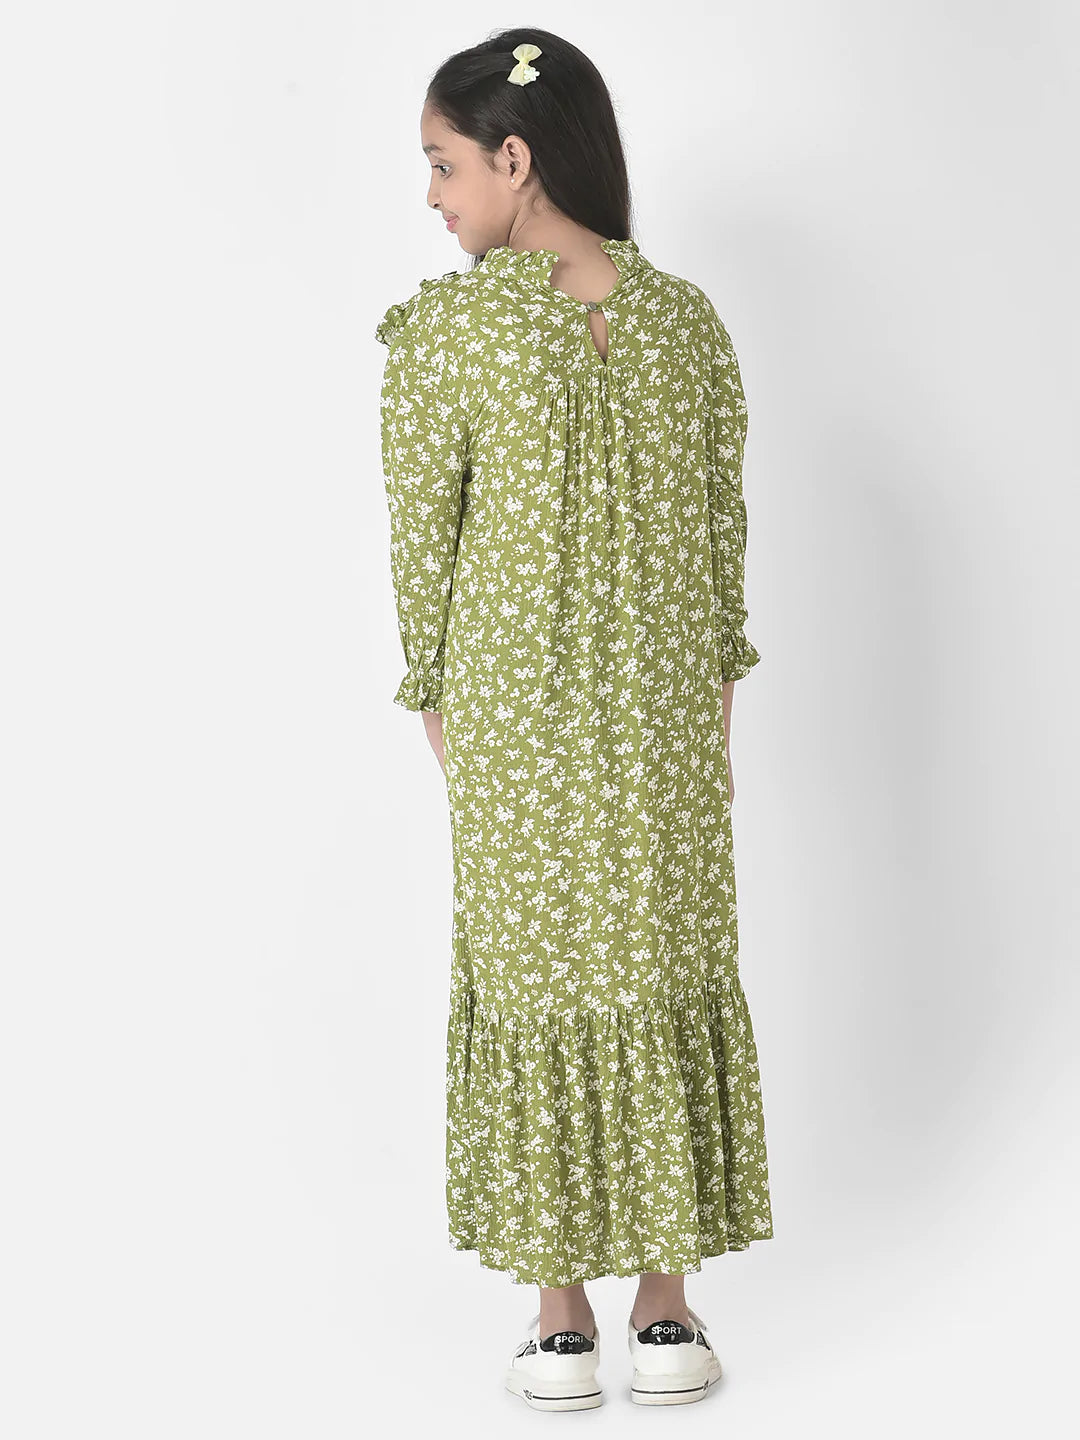  Green Floral Ruffles Dress